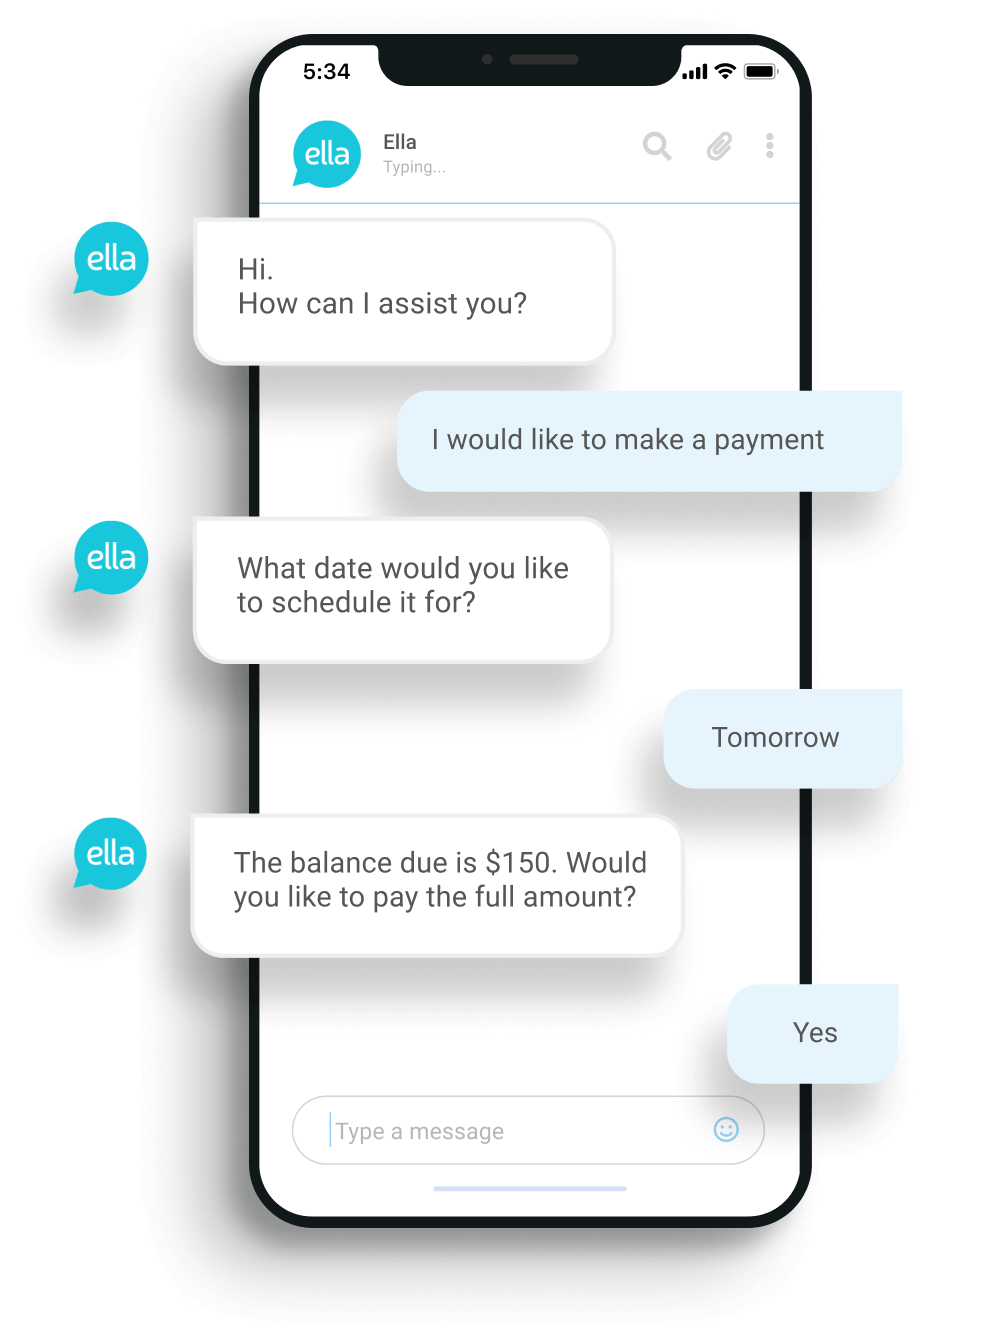 ella-chatbot-messaging